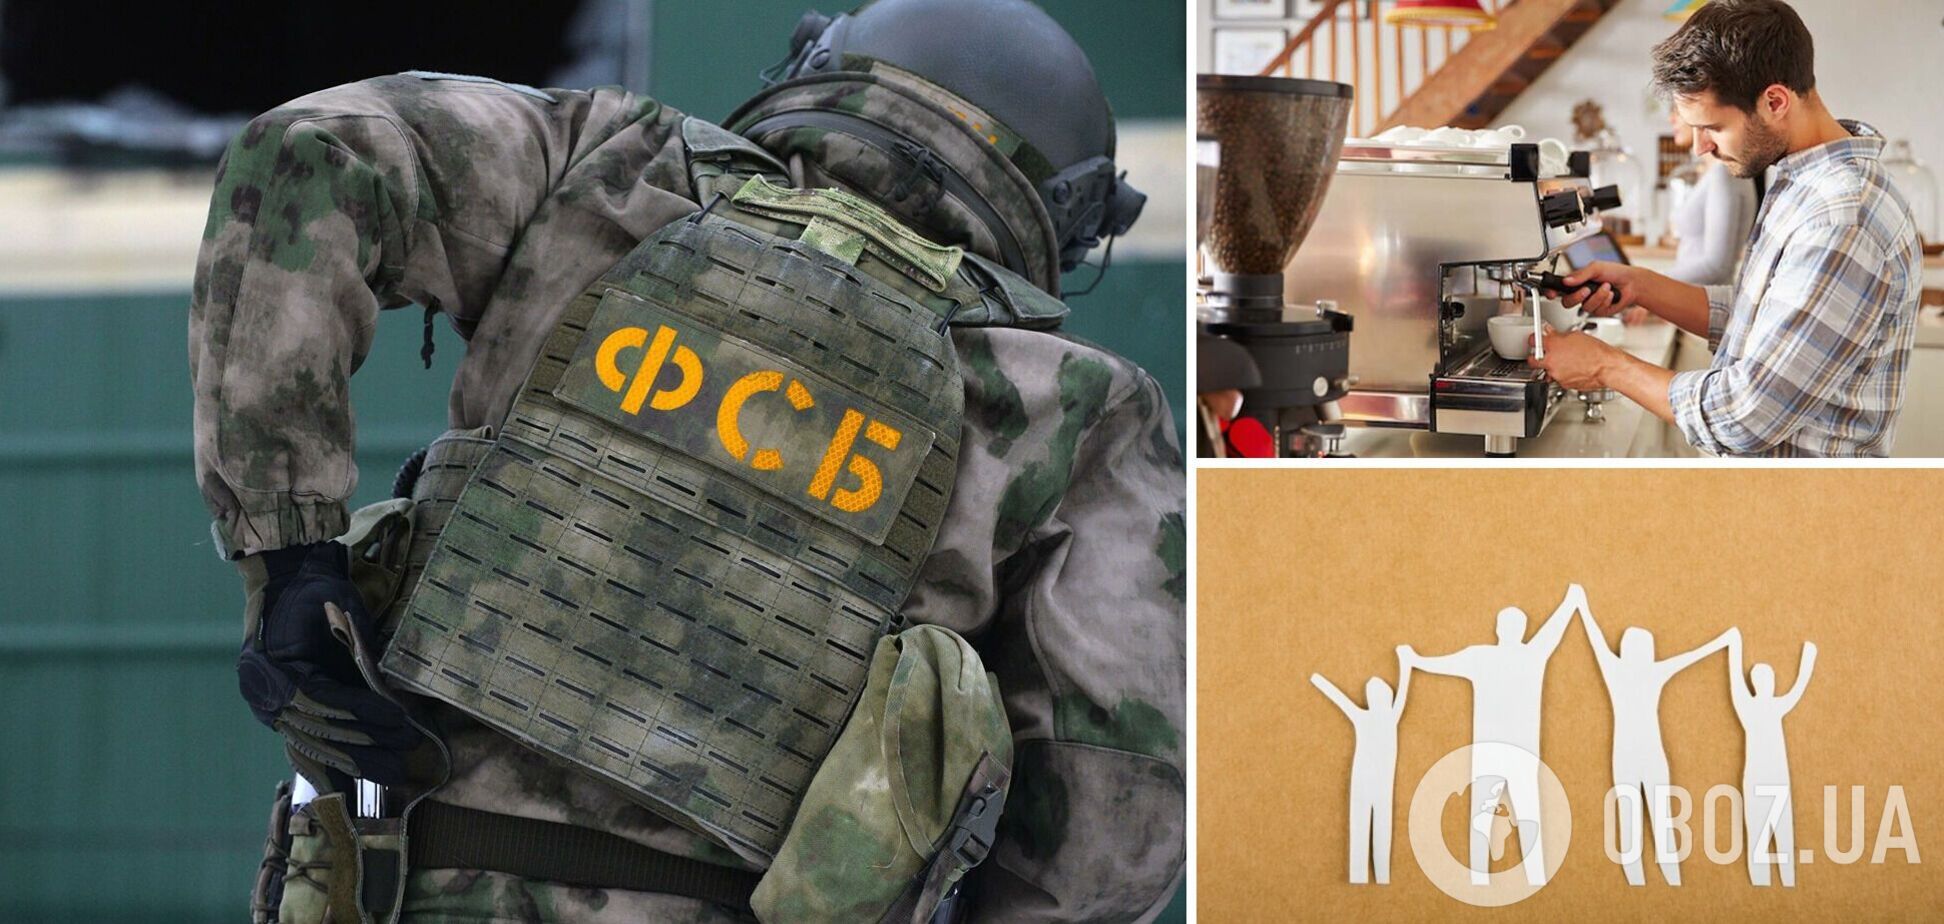 Торговец кофе и семья с Тернопольщины: СМИ узнали, кого ФСБ РФ объявила 'украинскими шпионами'